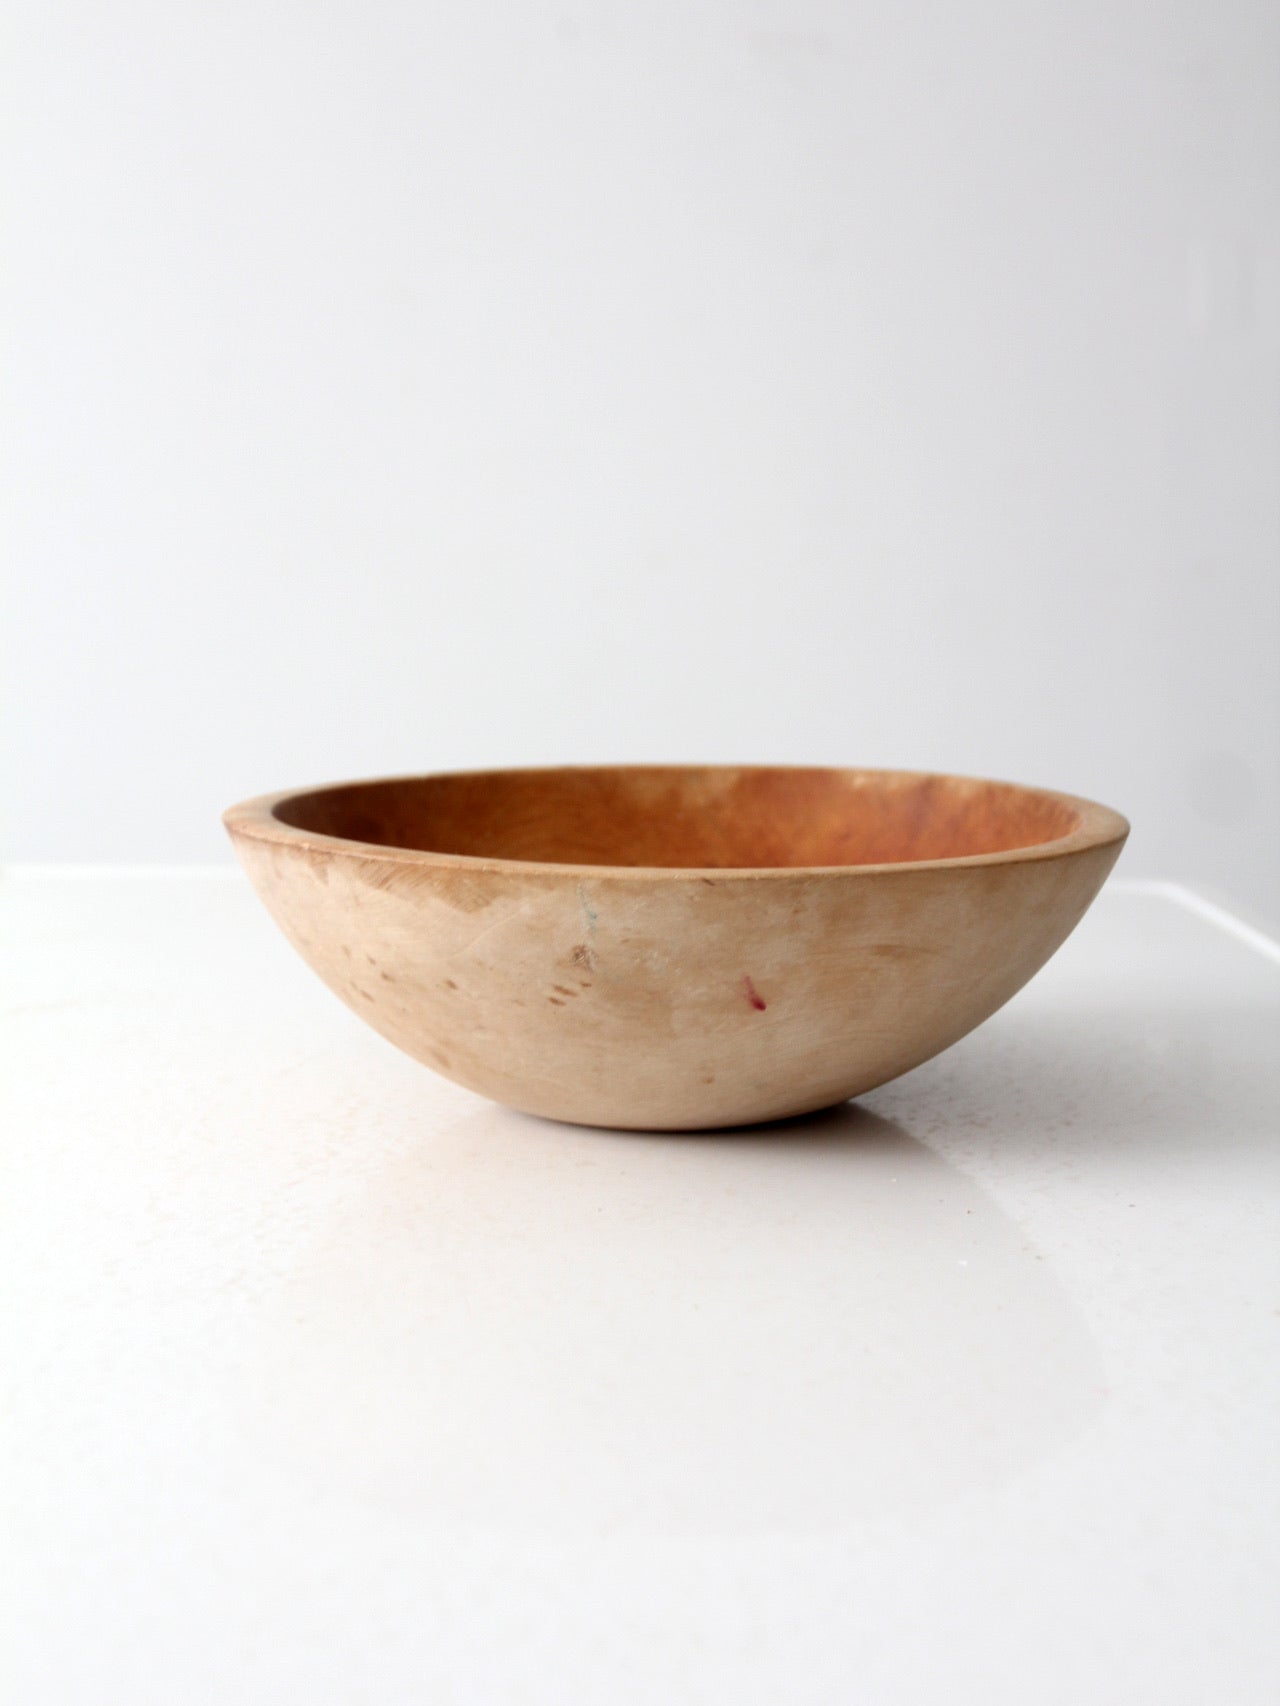 vintage Munising wood bowl